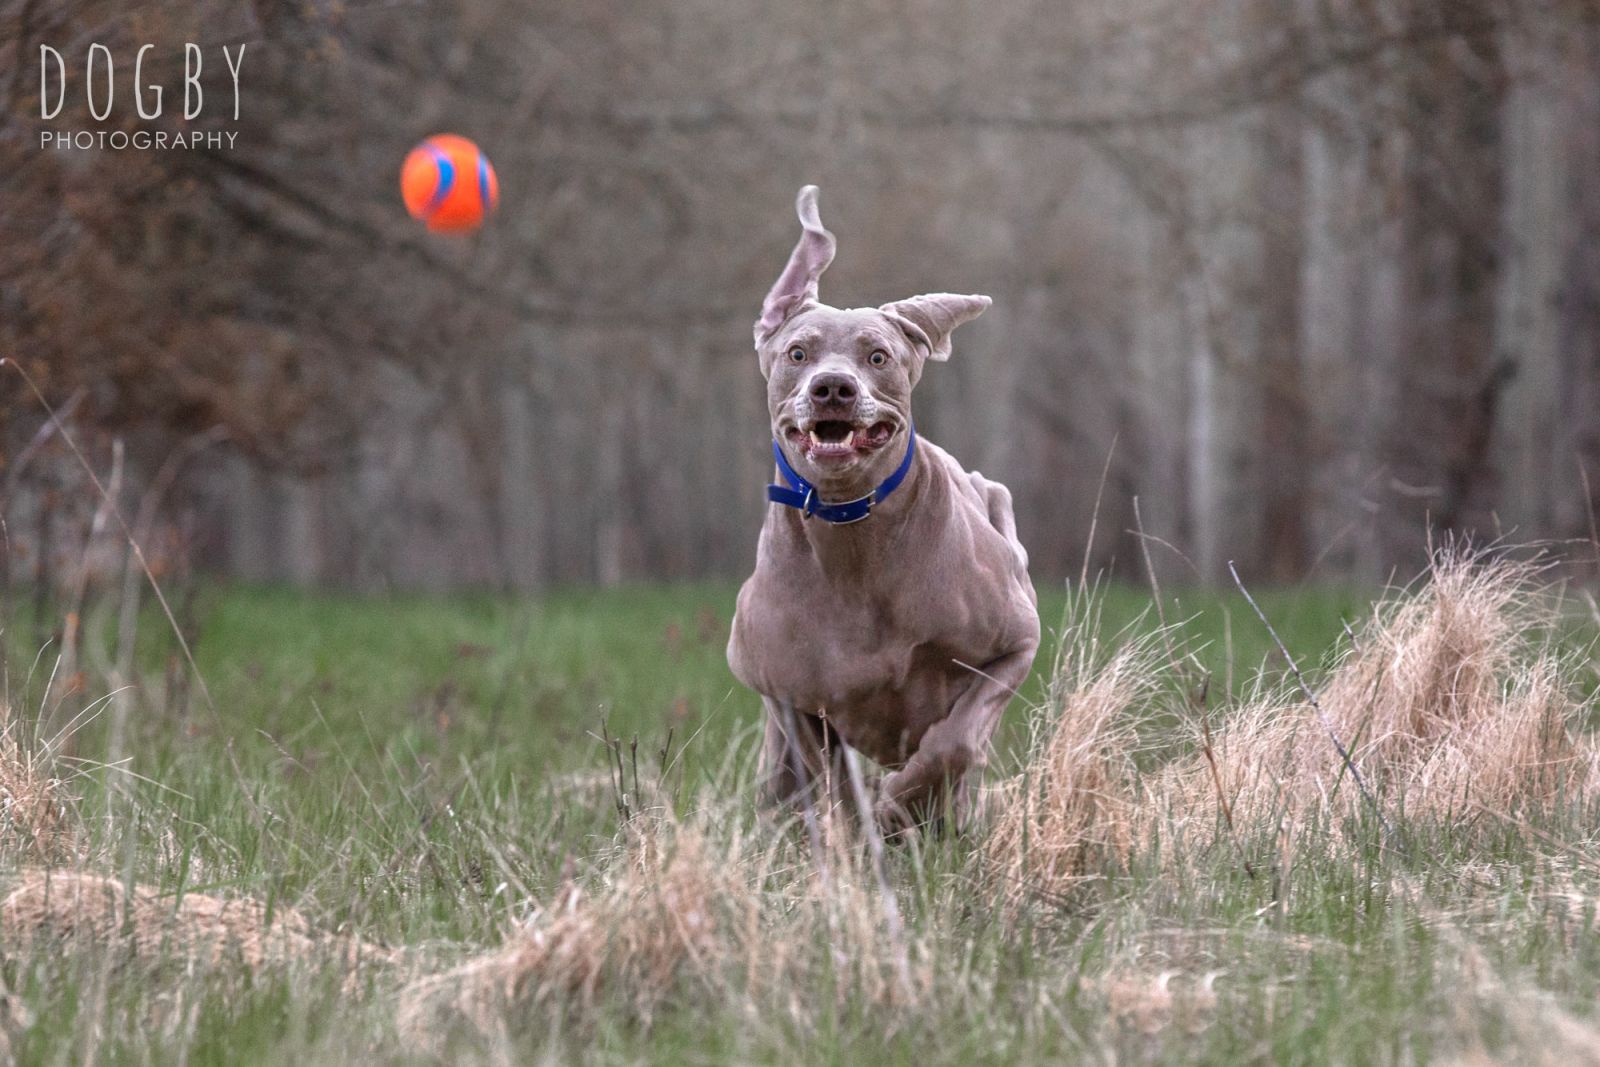 Dog running after a ball